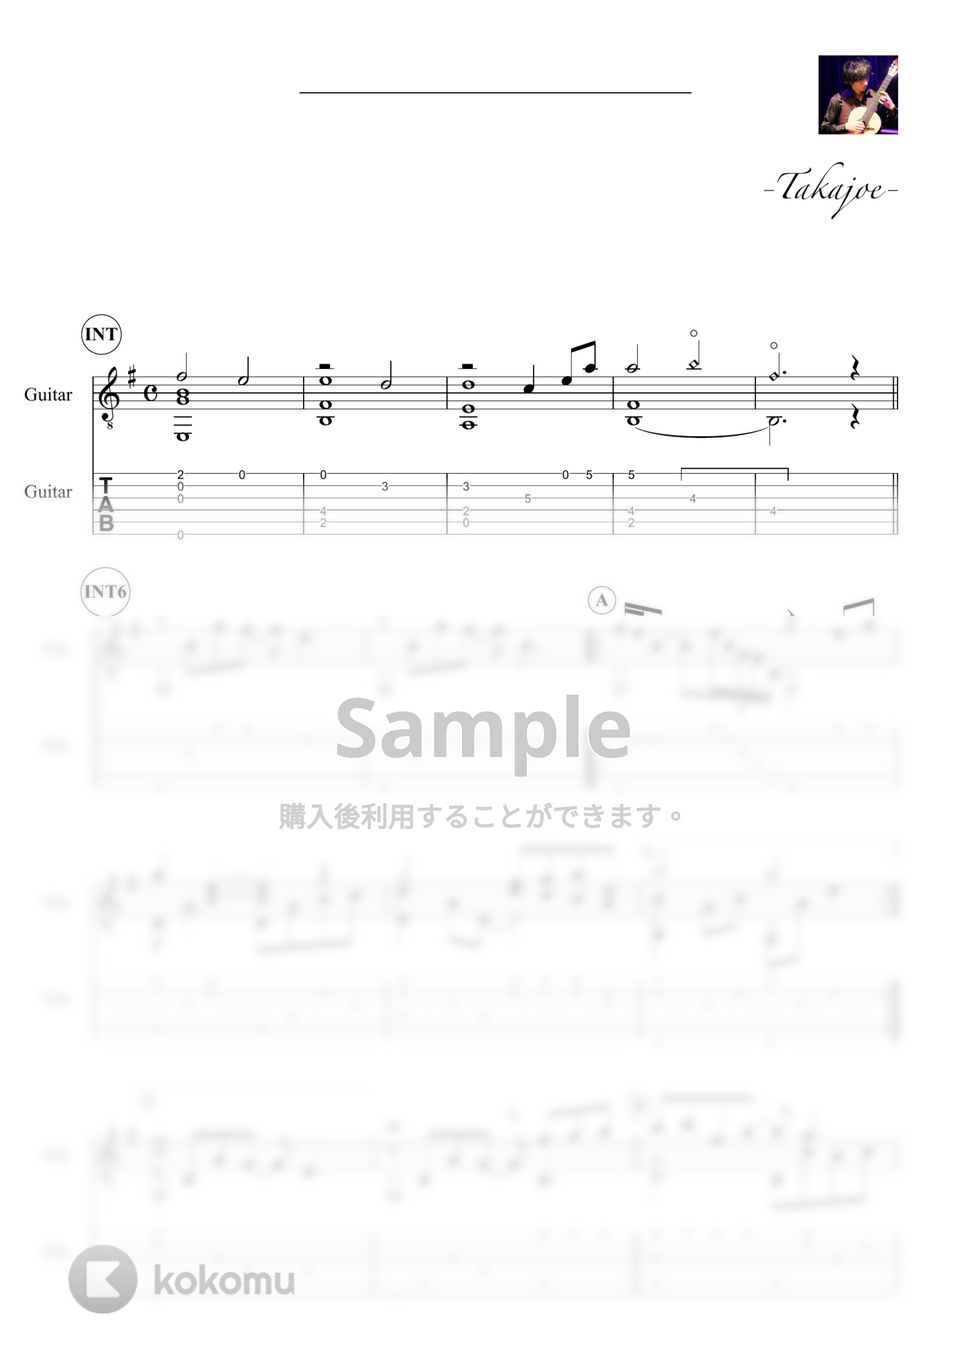 『NARUTO』 - 哀と悲(Sadness and Sorrow) by 鷹城-Takajoe-